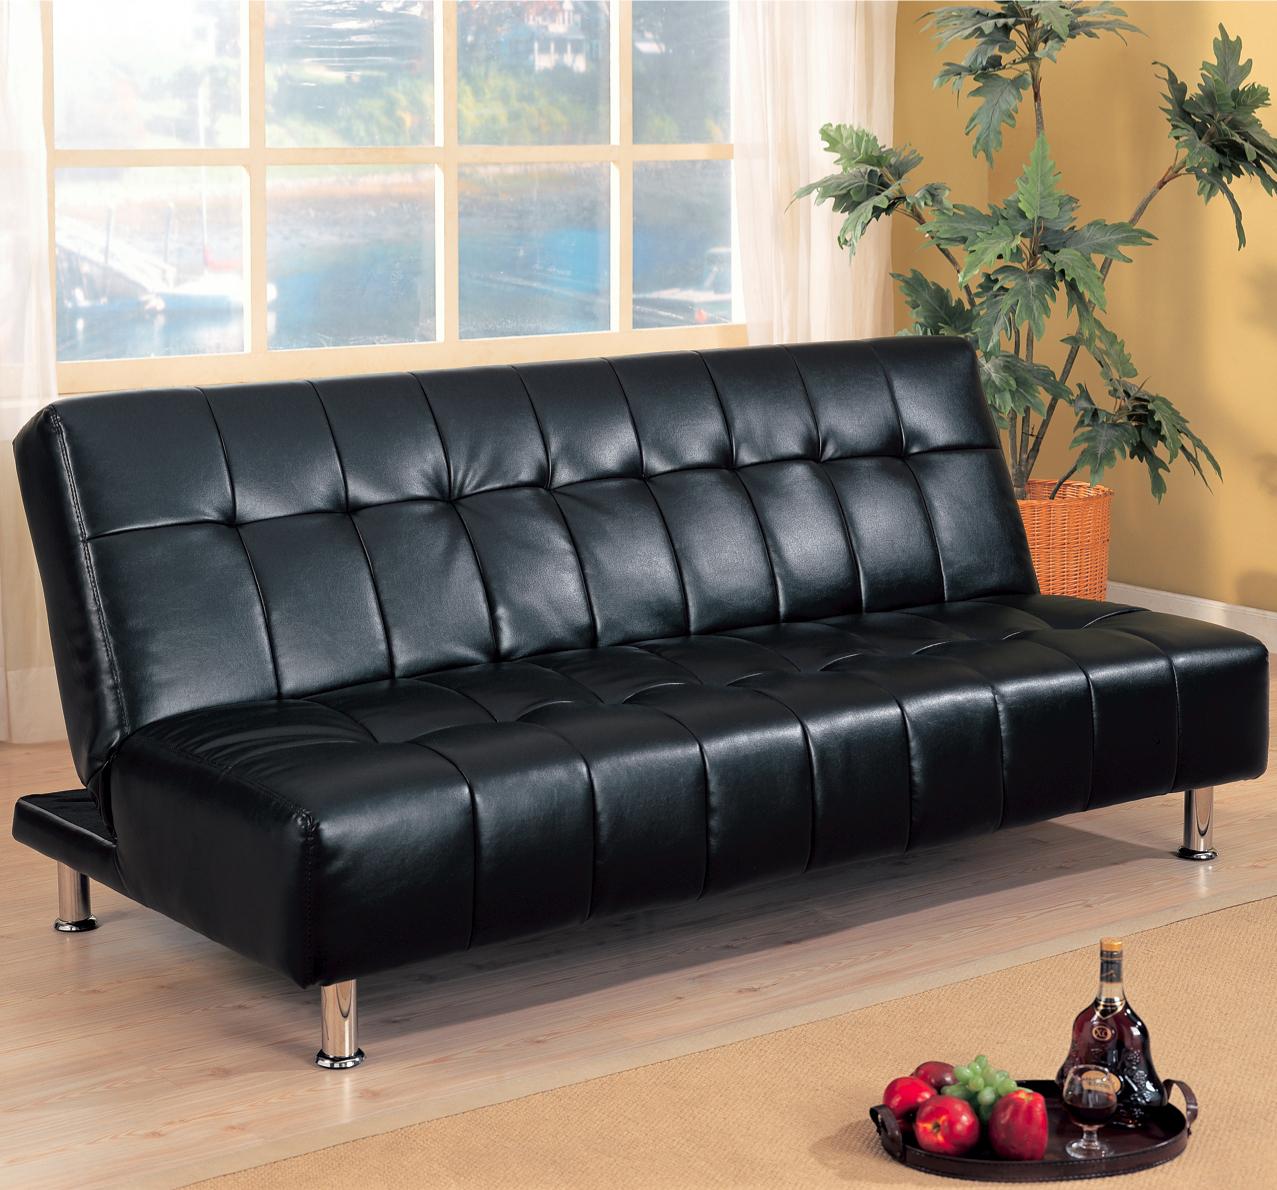 Armless-faux-leather-futon-sofa-bed